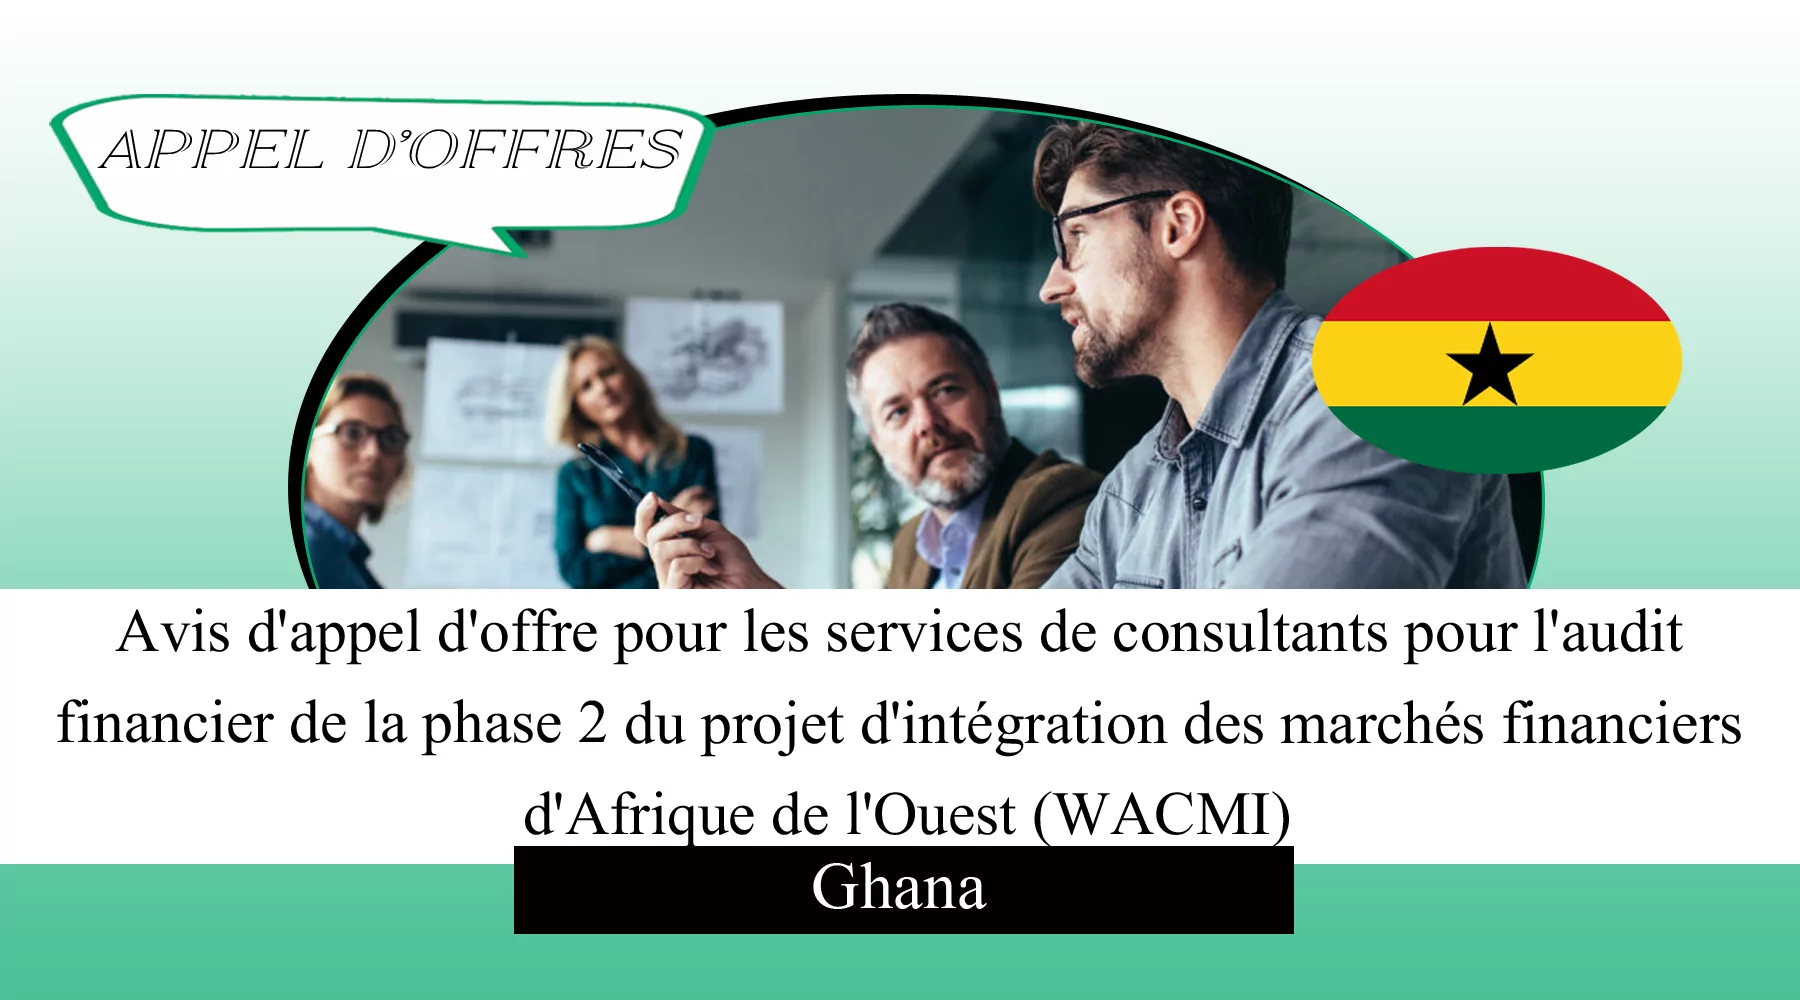 Avis d’appel d’offre pour les services de consultants pour l’audit financier de la phase 2 du projet d’intégration des marchés financiers d’Afrique de l’Ouest (WACMI), Ghana